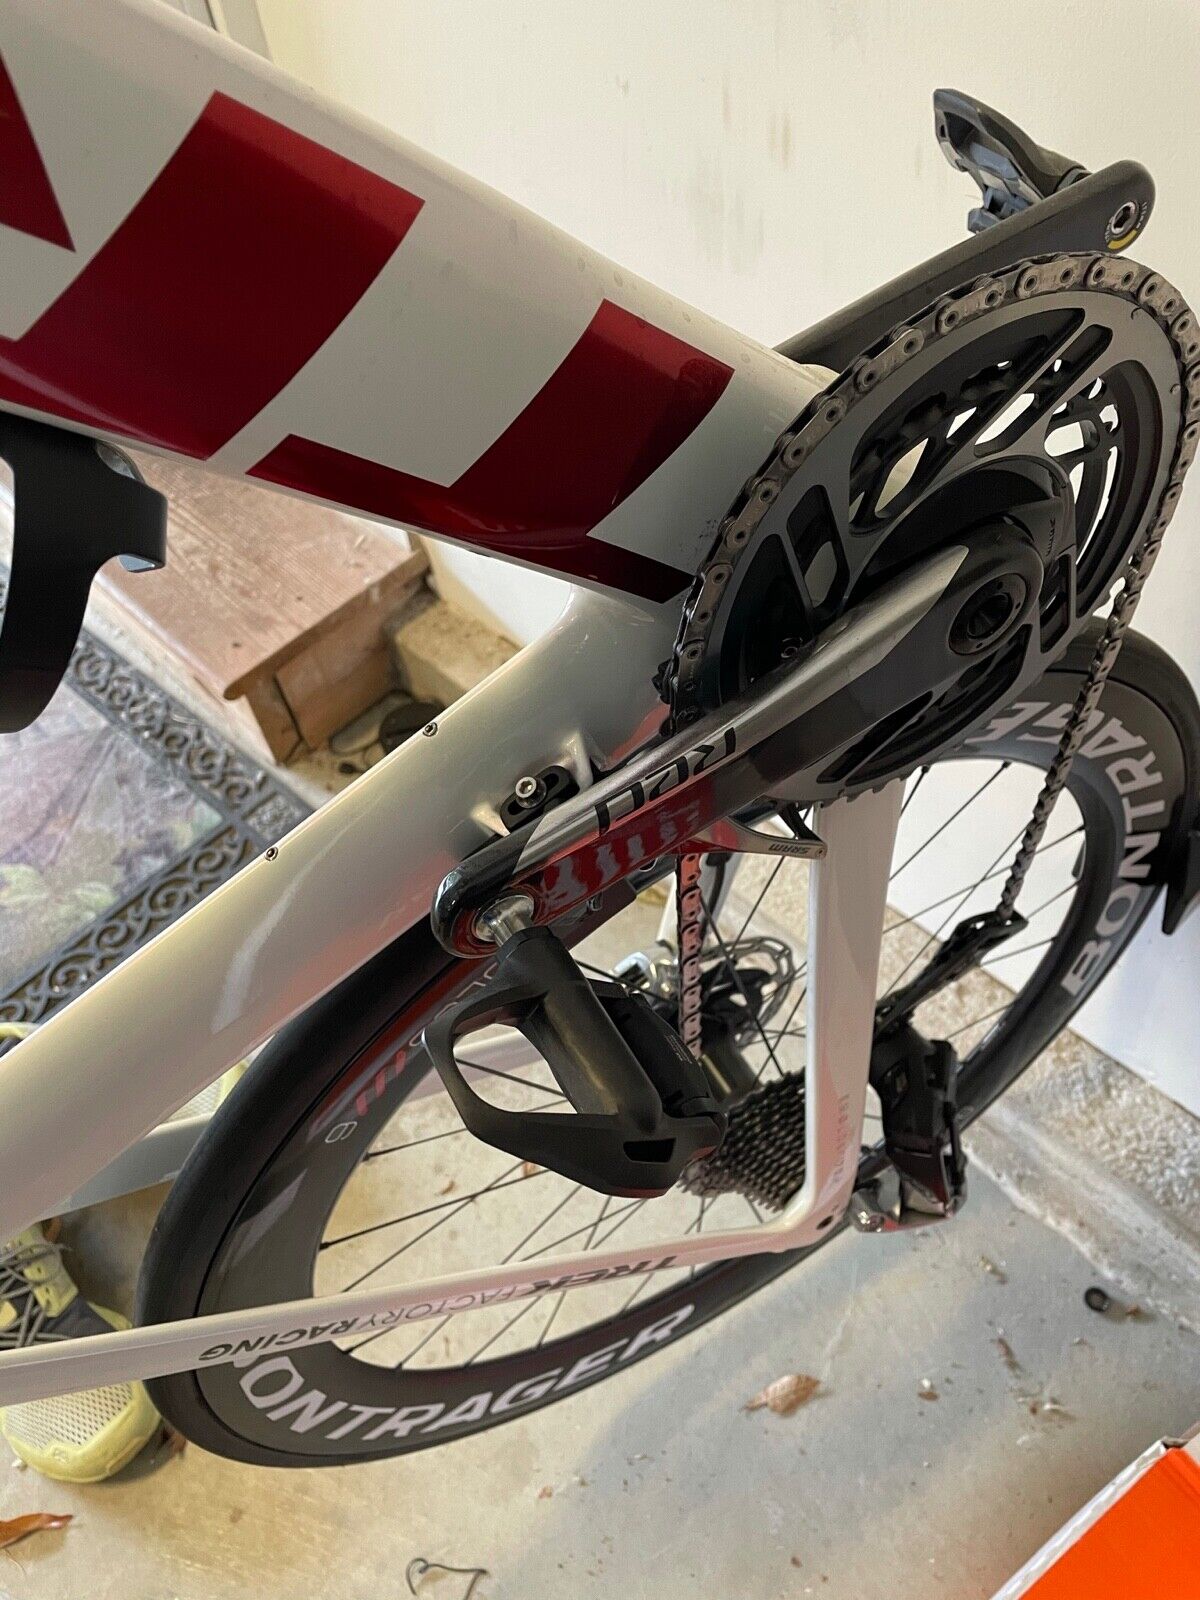 Bicycle for Sale: Trek Madone slr 9 etap in Santa Monica, California